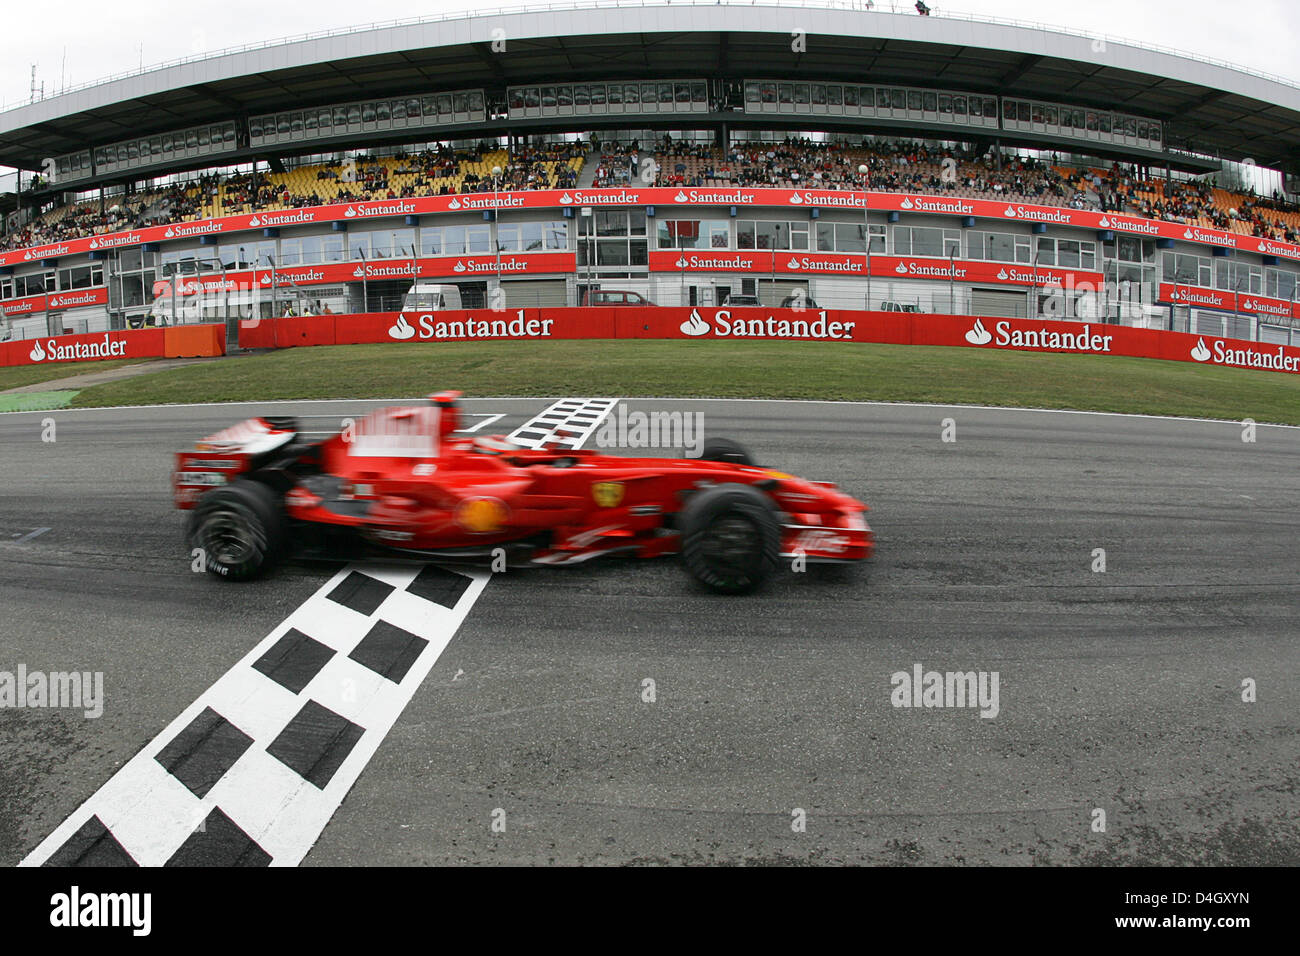 Pilote de formule 1 finlandais Kimi Raikkonen de Ferrari oriente sa voiture au cours de la première session d'essais à Hockenheim race track en Allemagne, le 18 juillet 2008. Le Grand Prix d'Allemagne aura lieu le dimanche 20 juillet 2008. Photo : Roland Weihrauch Banque D'Images